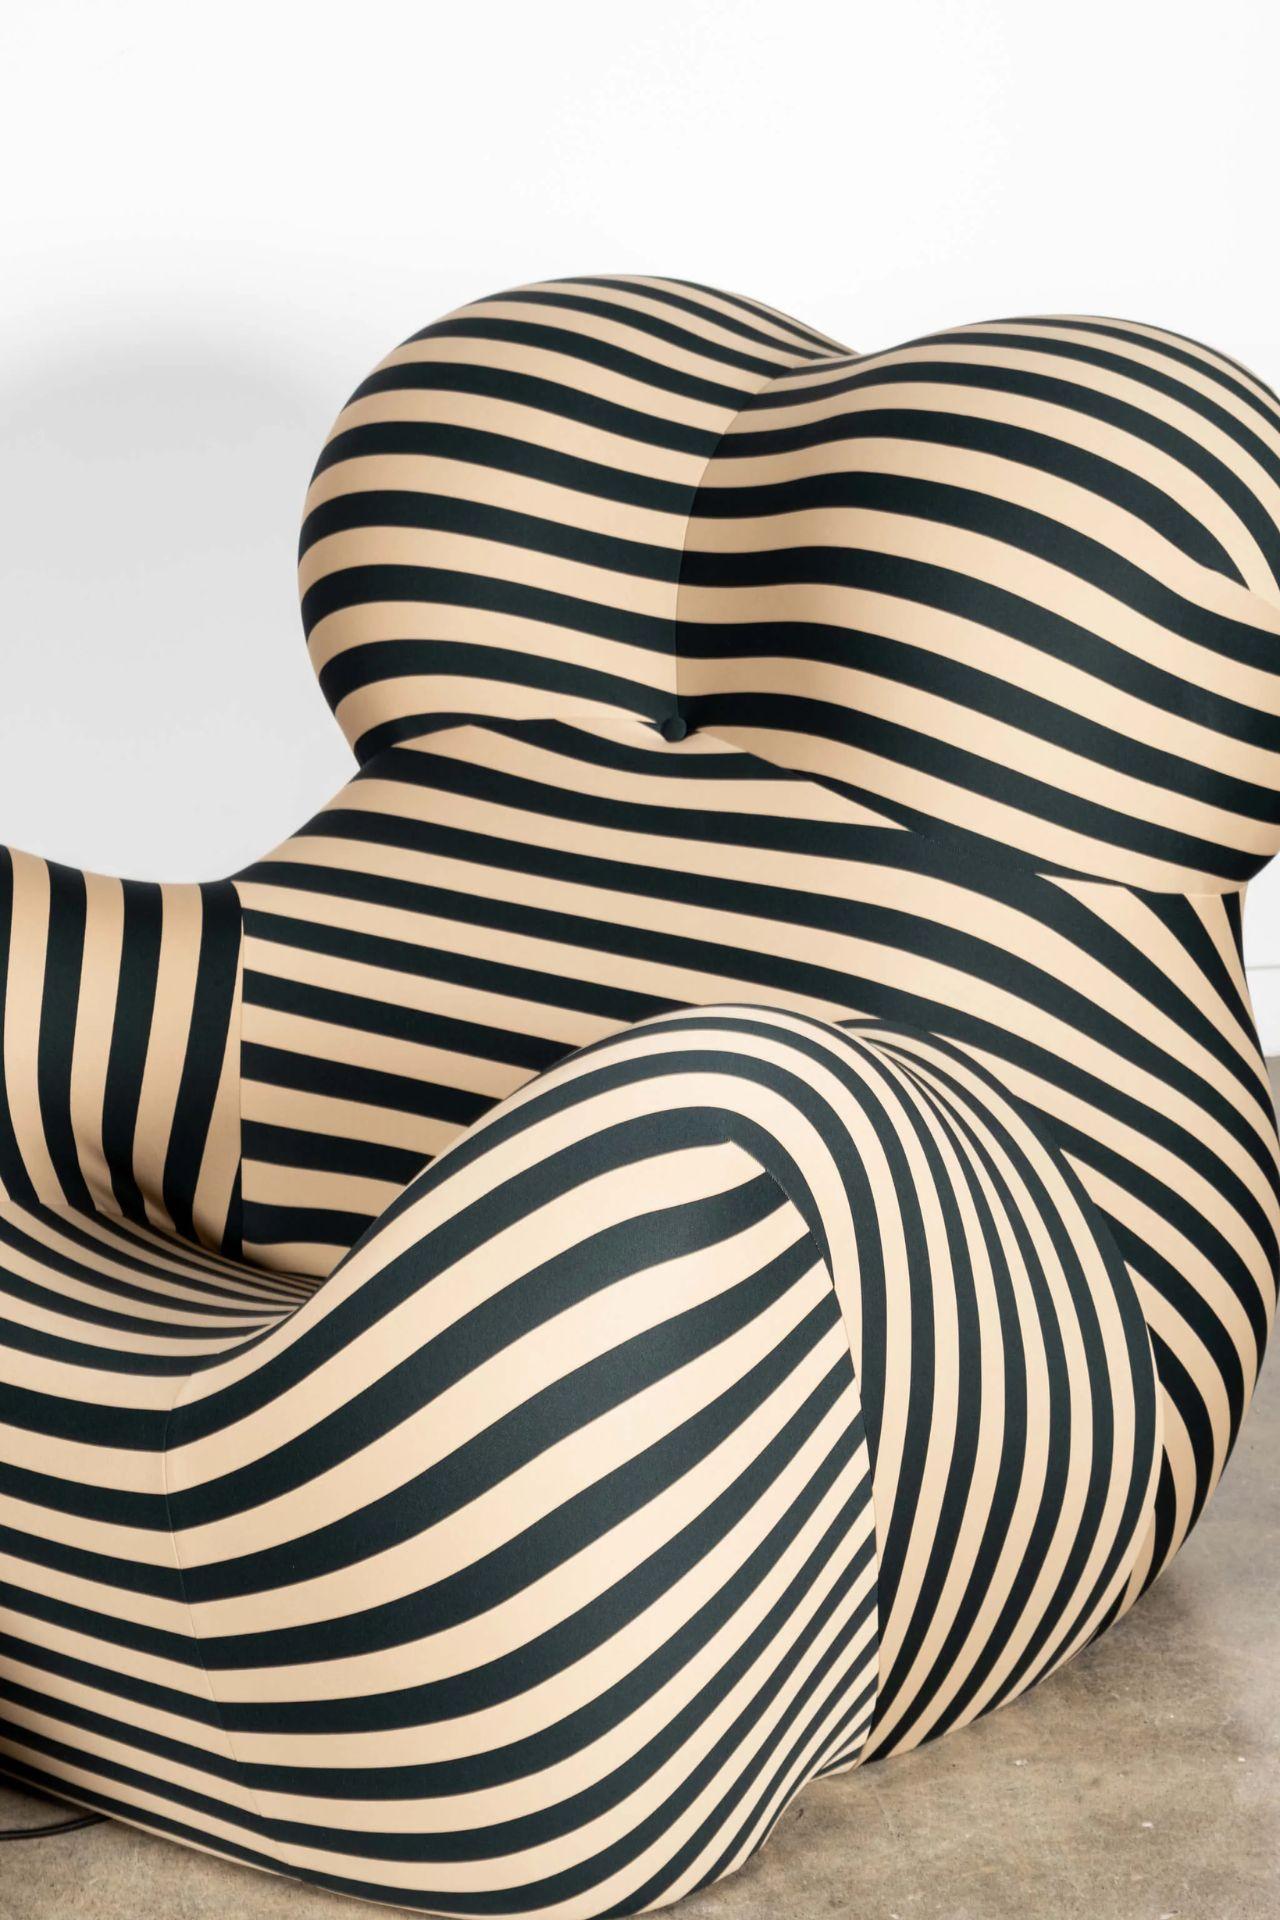 B&B Italia 'La Mamma' Up 5/6 Lounge Chair&Ottoman, Green Stripe by Gaetano Pesce For Sale 1